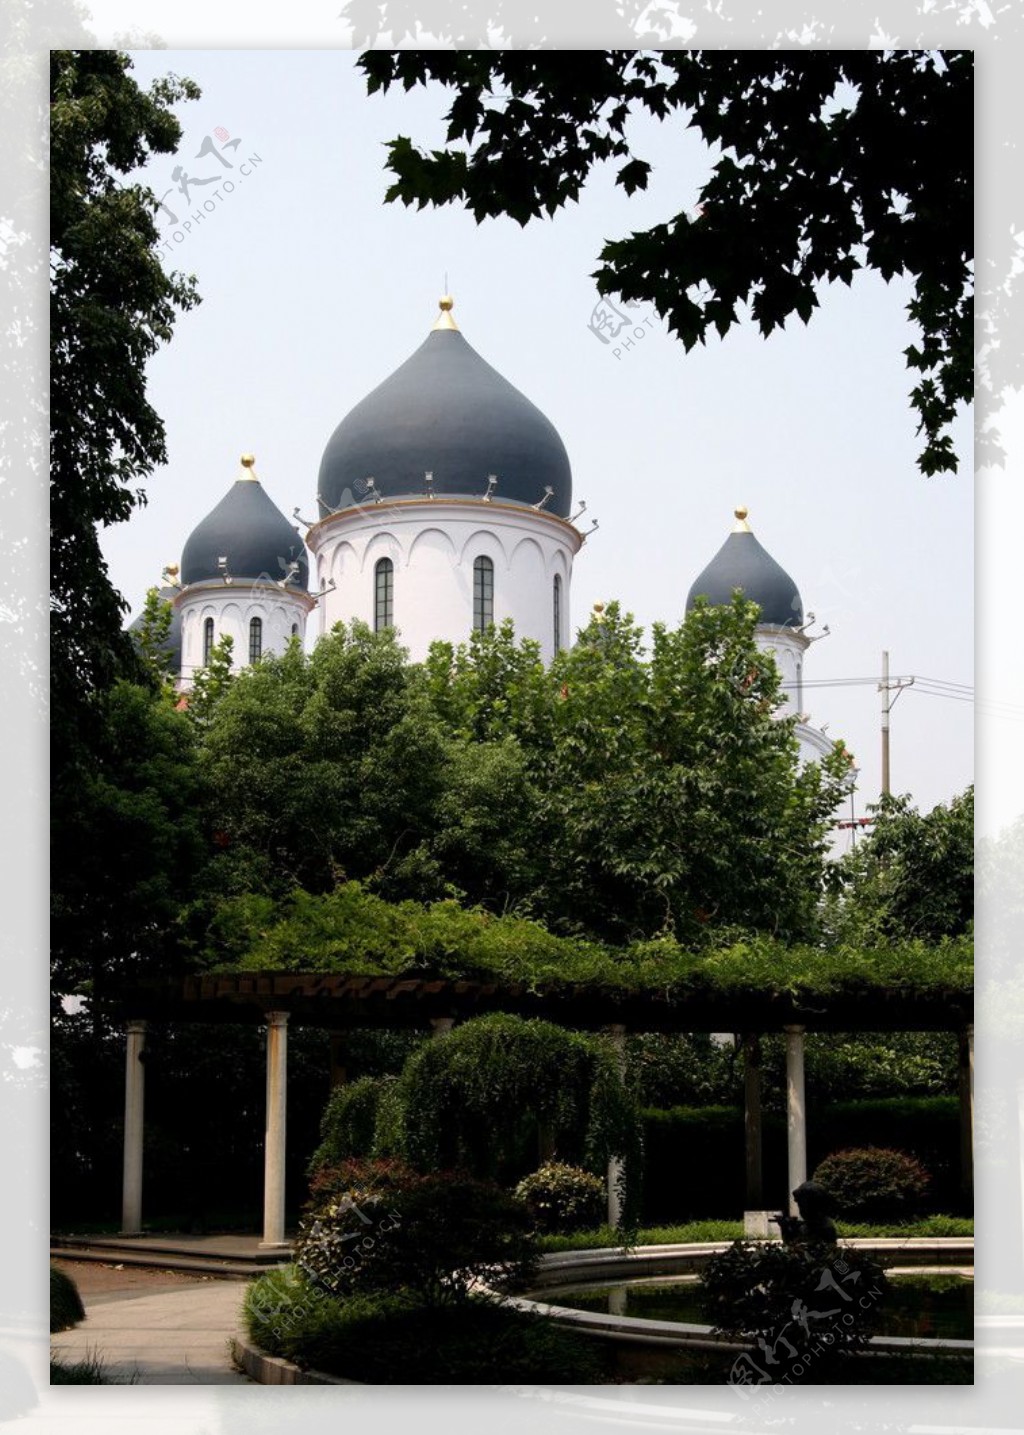 上海襄阳路东正教堂图片